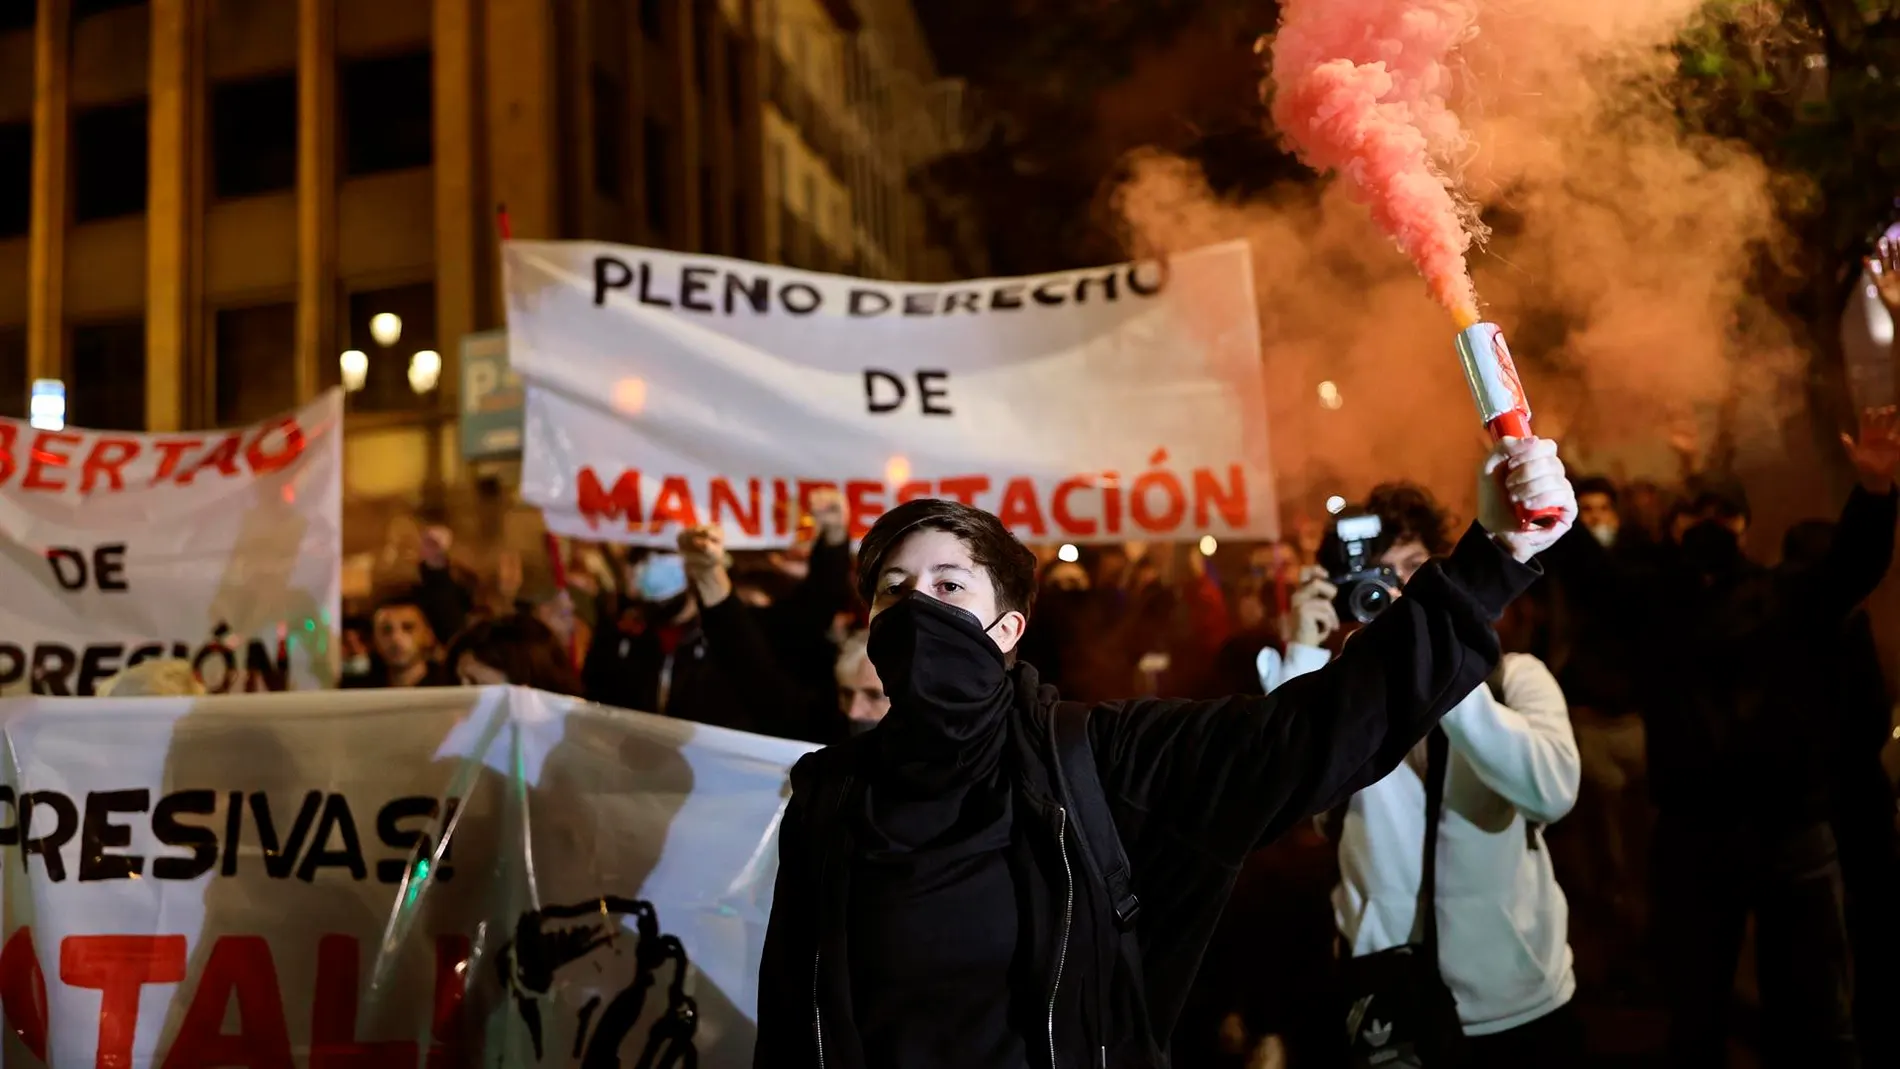 Grupos antisistema se manifiestan en Madrid contra "el aumento de las leyes represivas" 